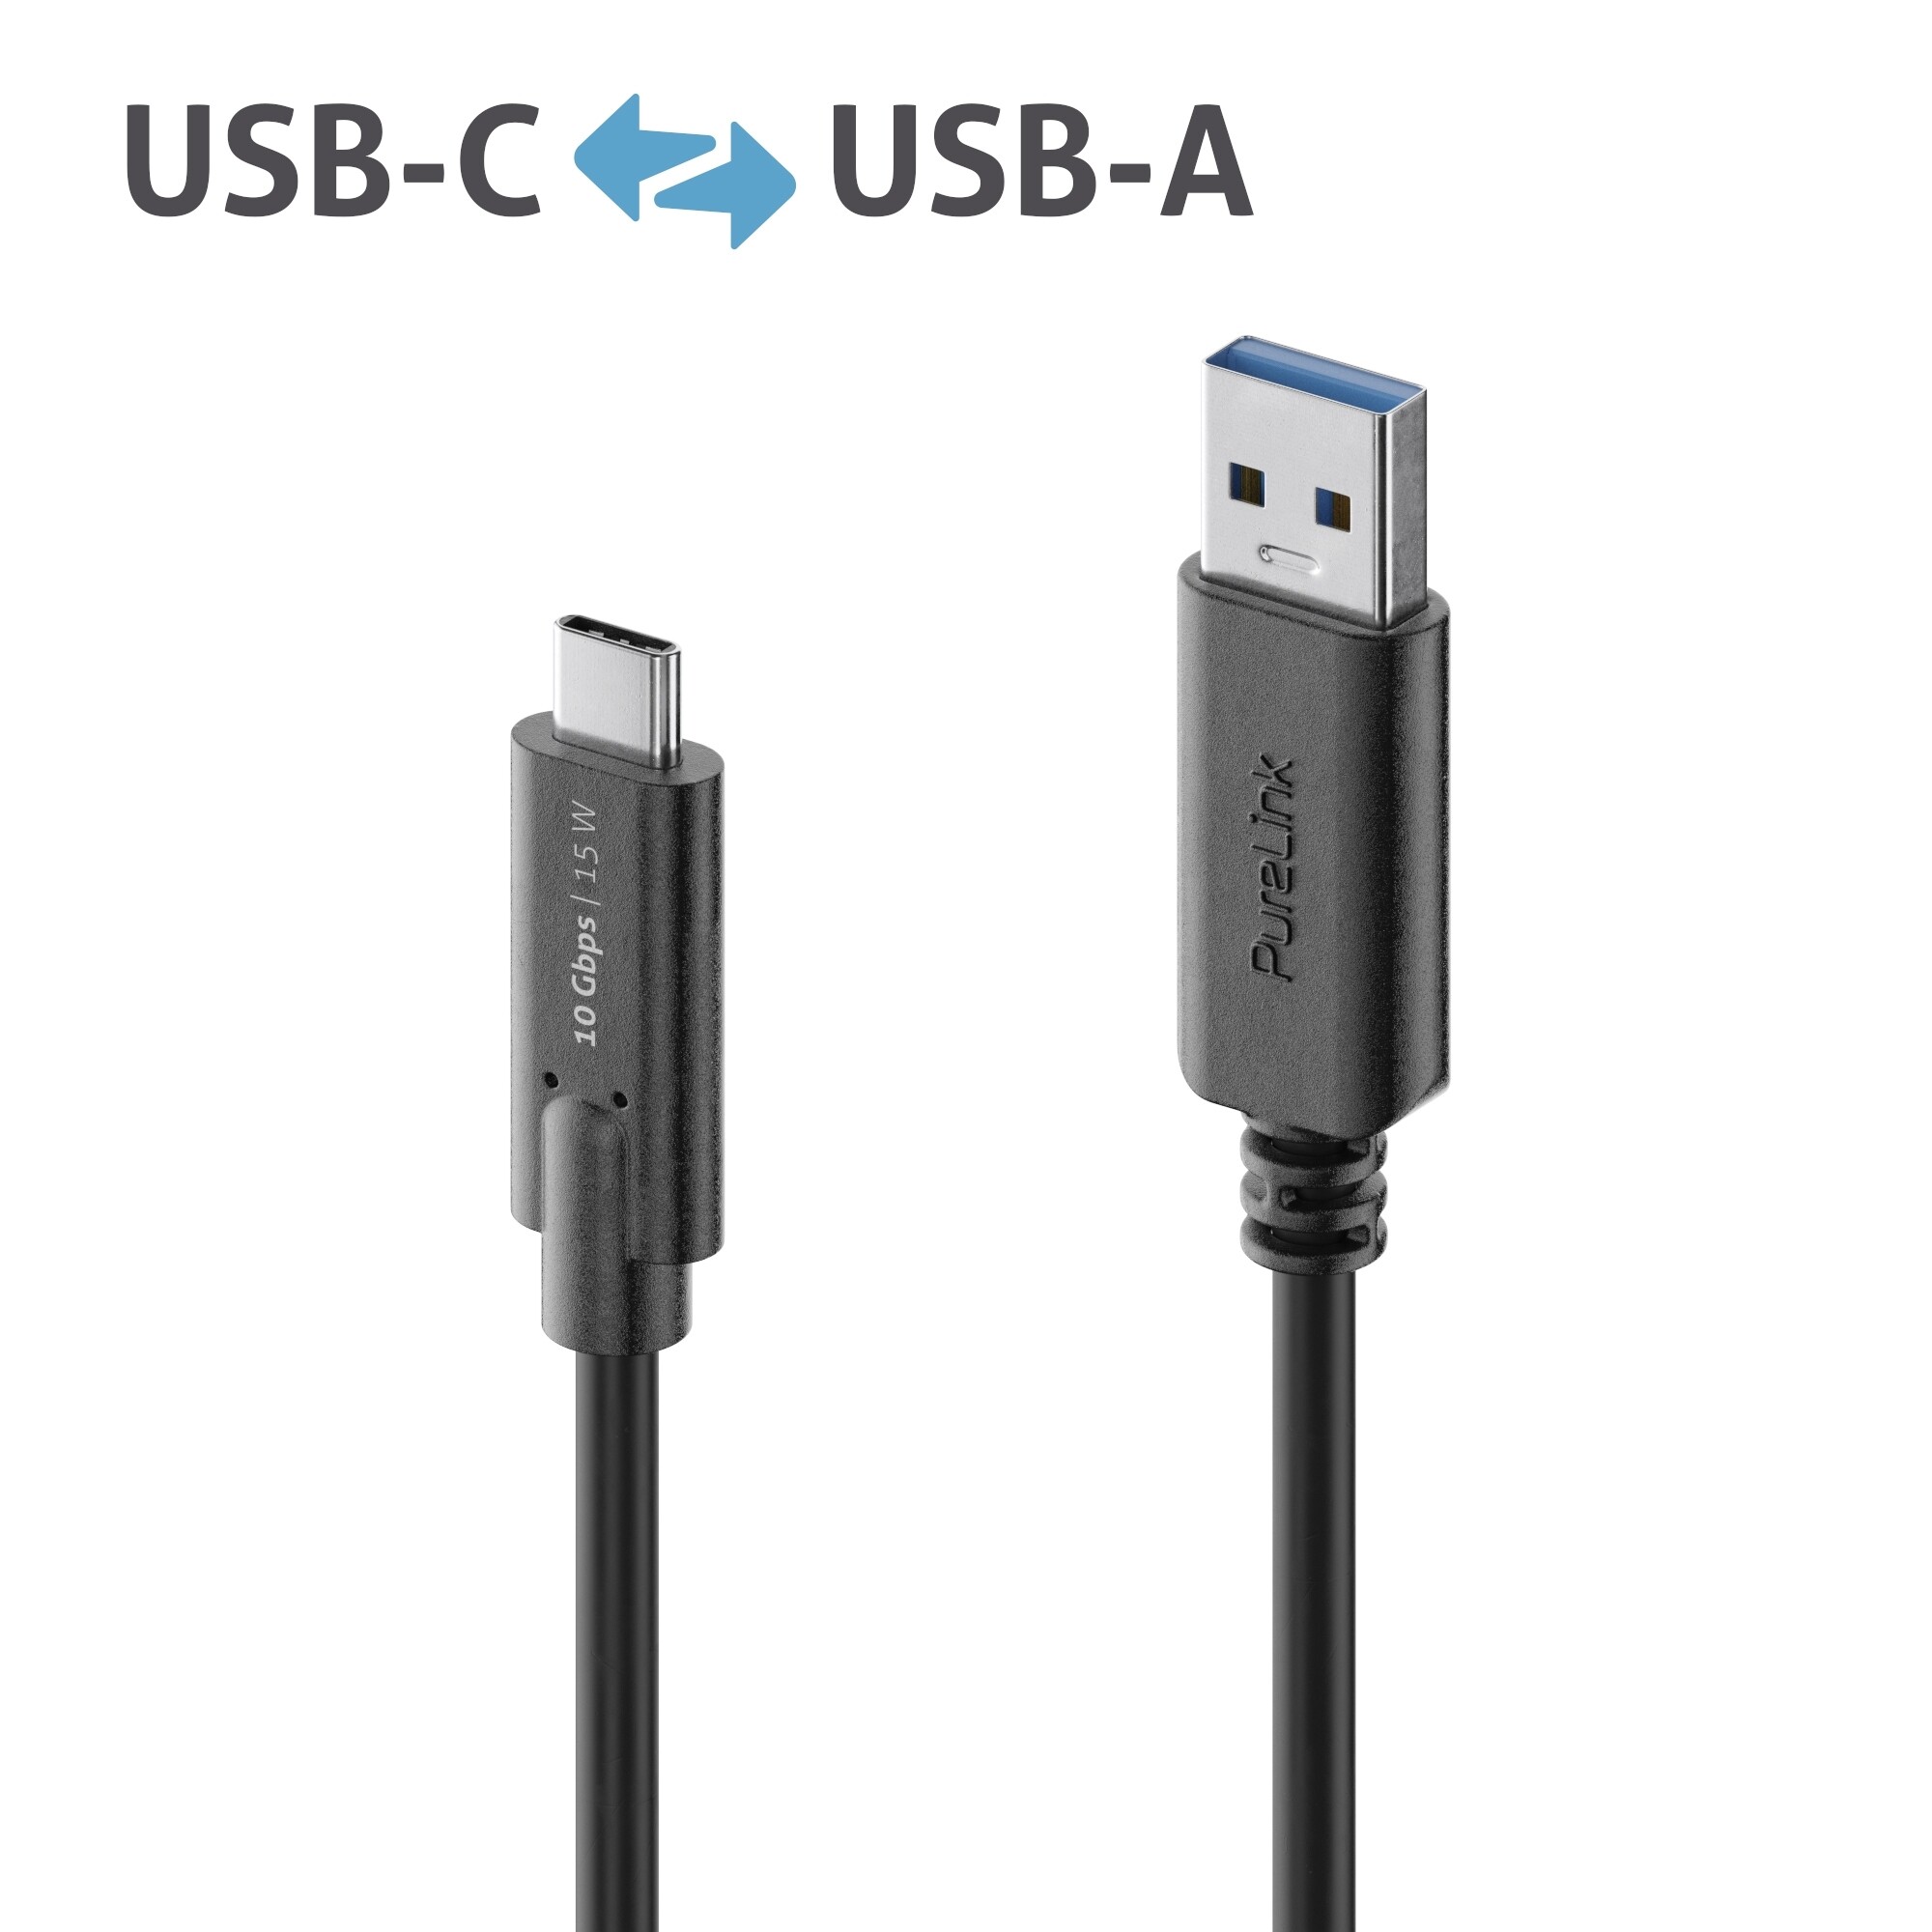 Purelink-IS2611-010-USB-C-auf-USB-A-Gen-2-Kabel-1m-schwarz